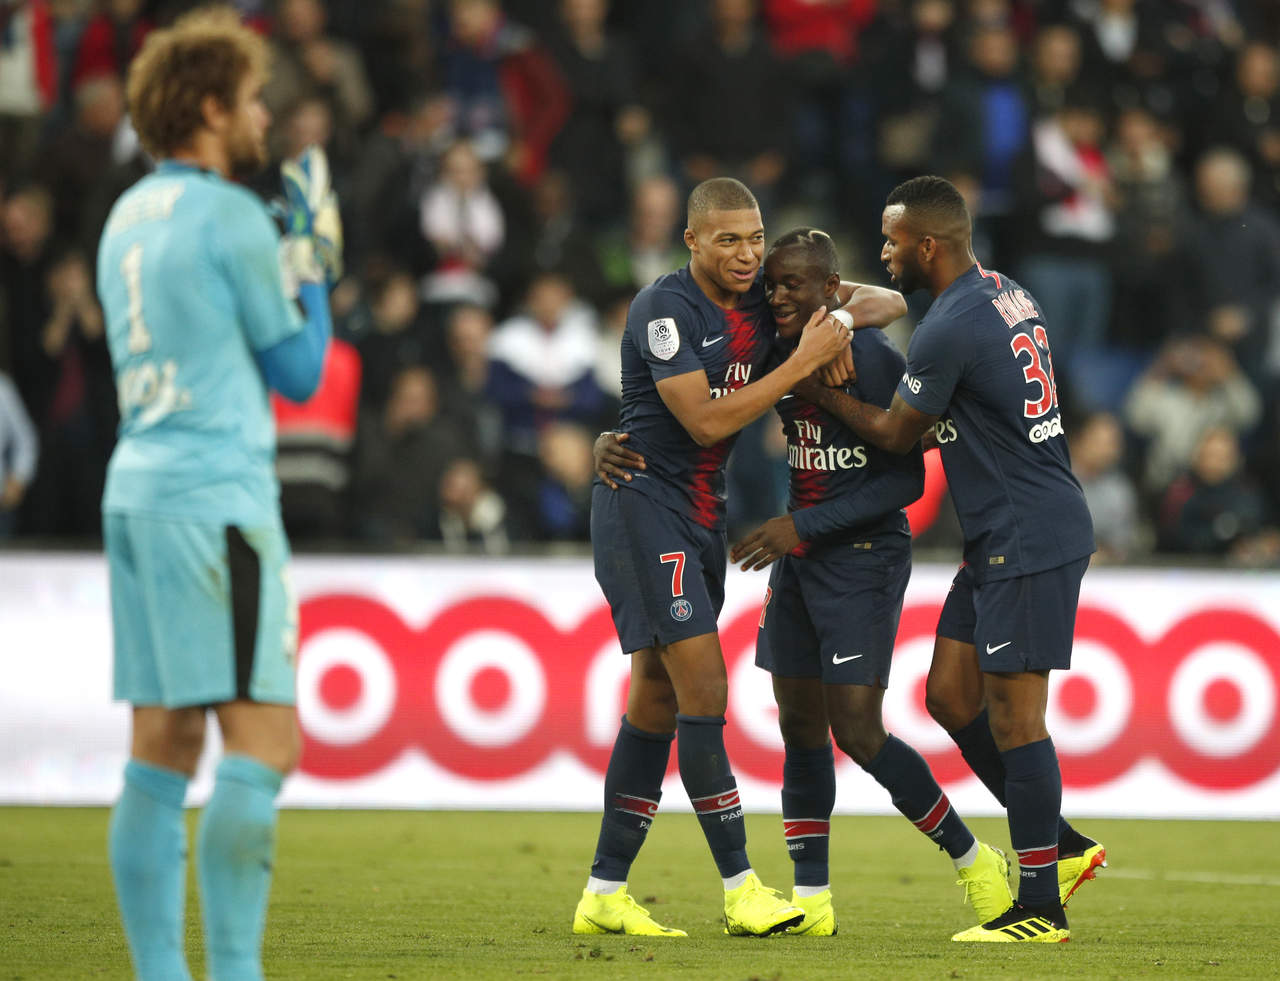 El súper líder trituró el sábado 5-0 a Amiens, su décima victoria seguida en la liga francesa. (AP)